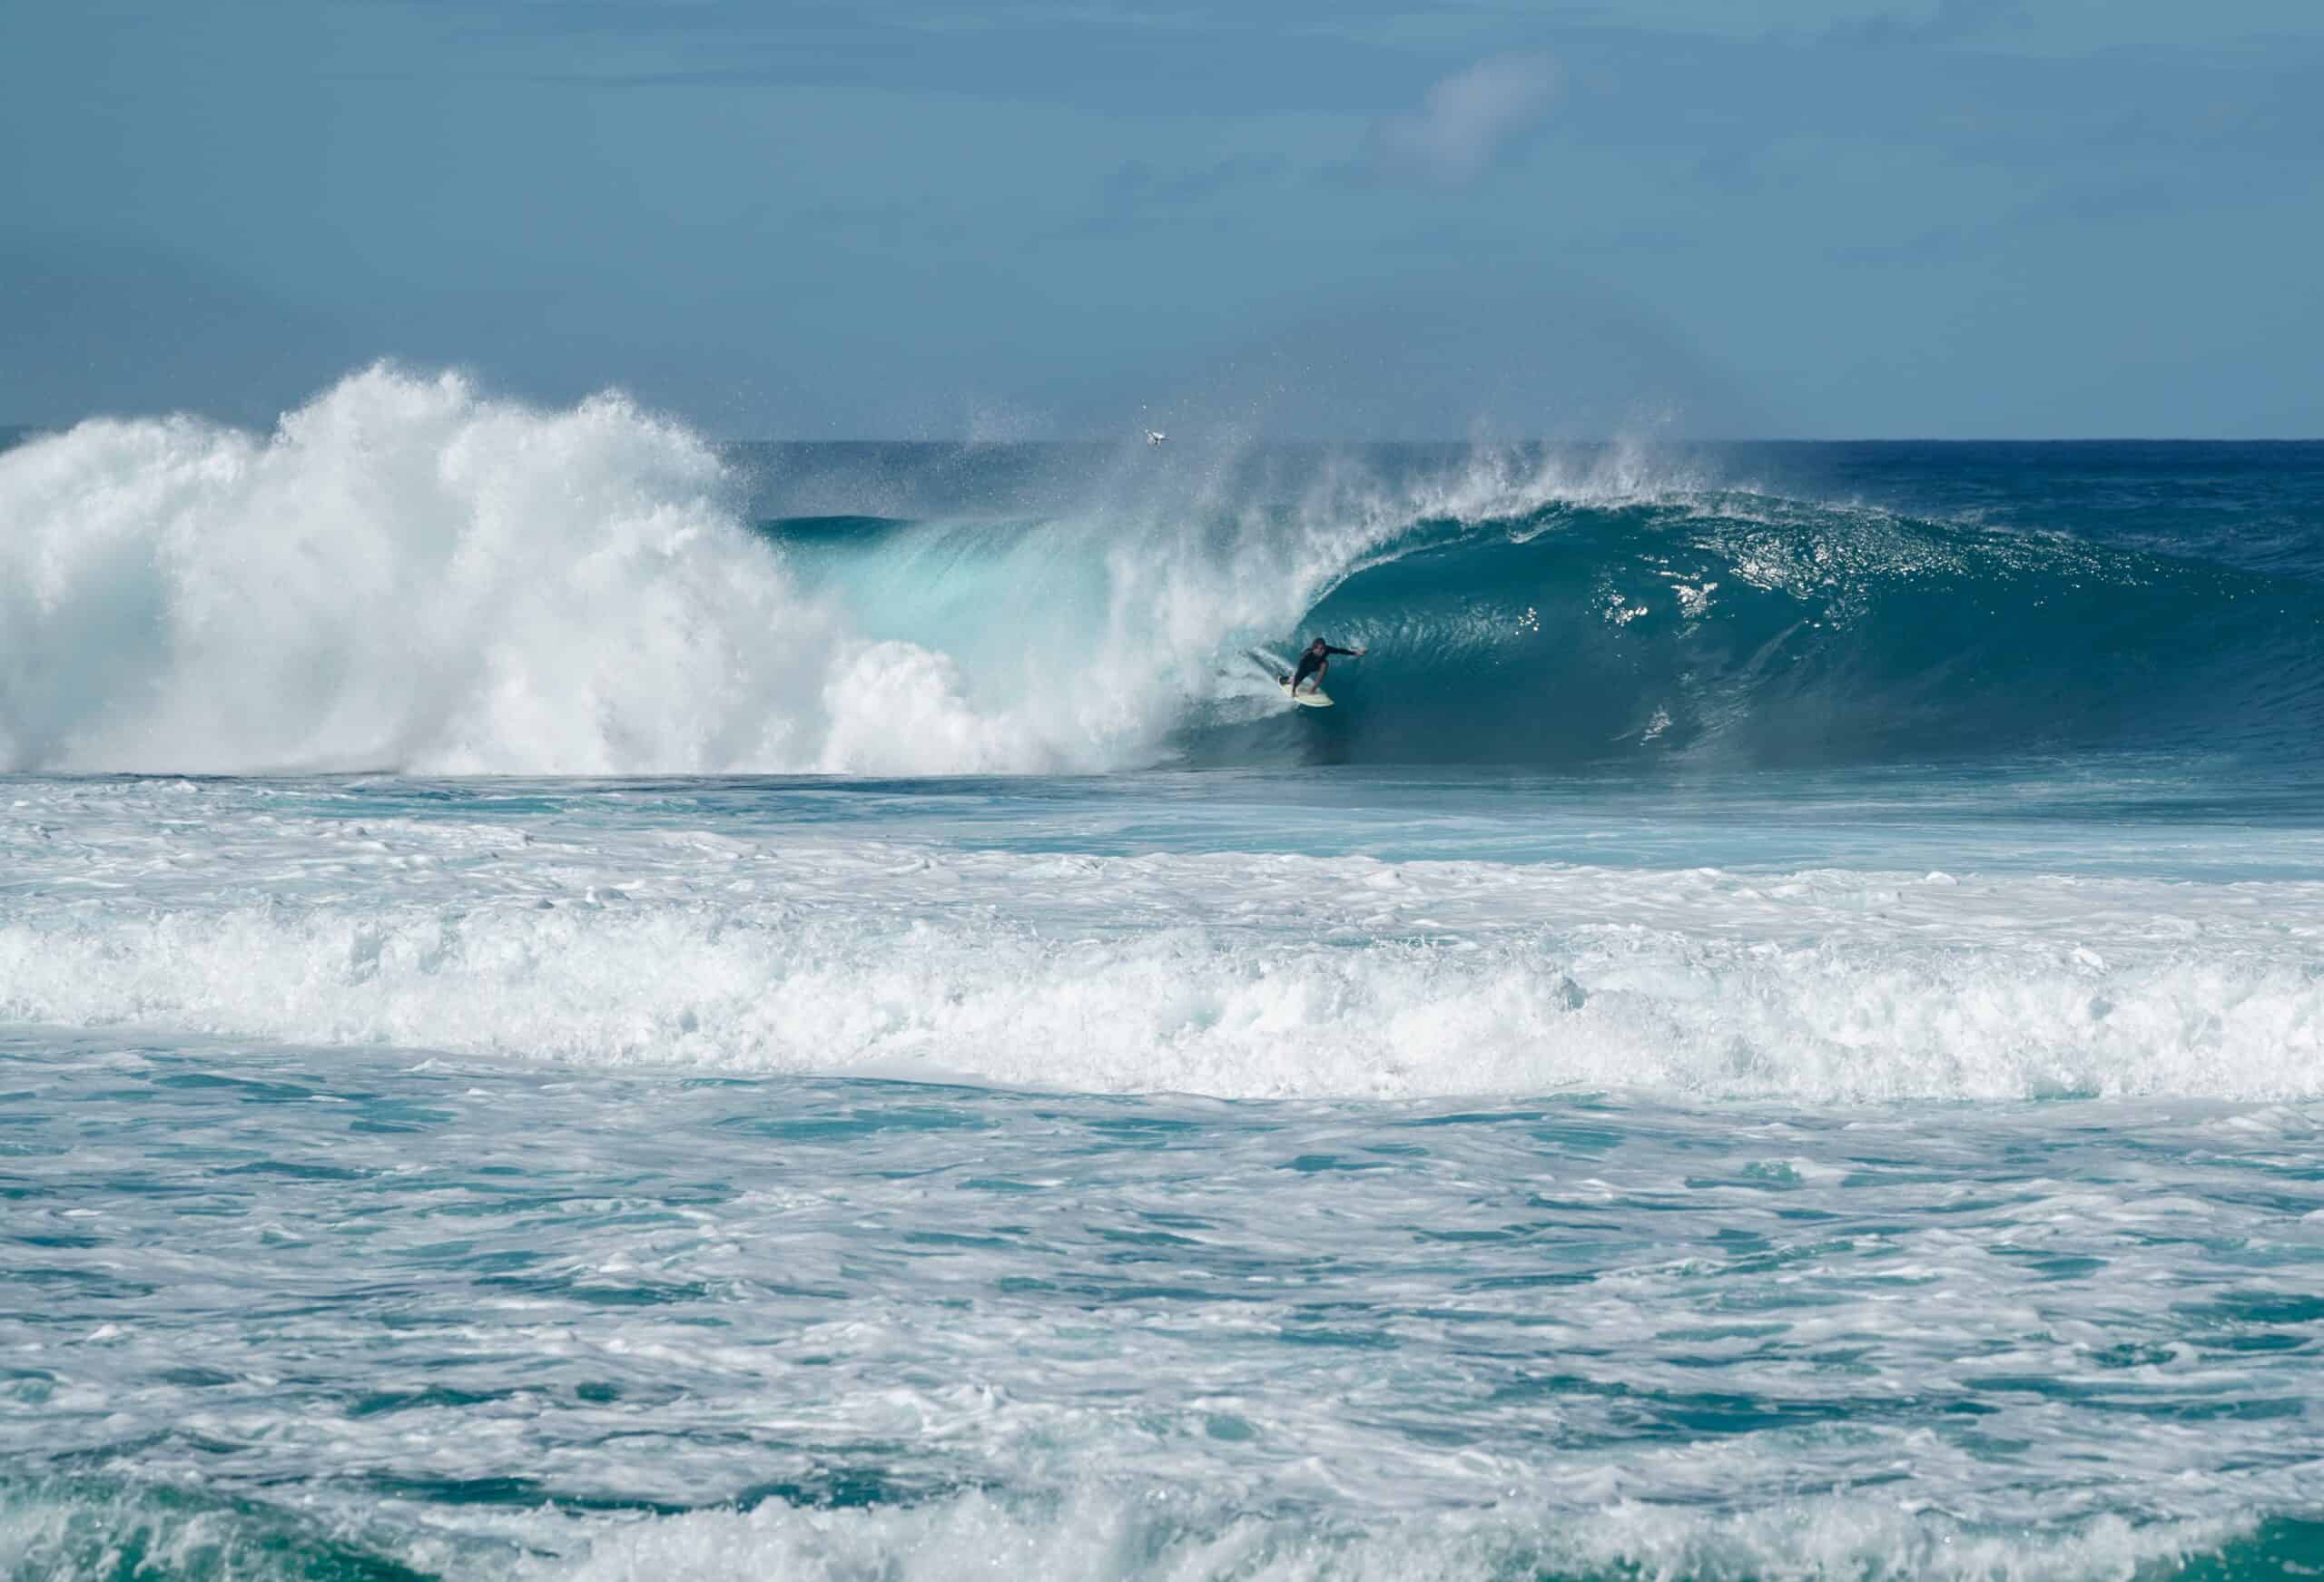 Eddie Would Go: The Story of Eddie Aikau, Hawaiian Hero and Pioneer of Big  Wave Surfing